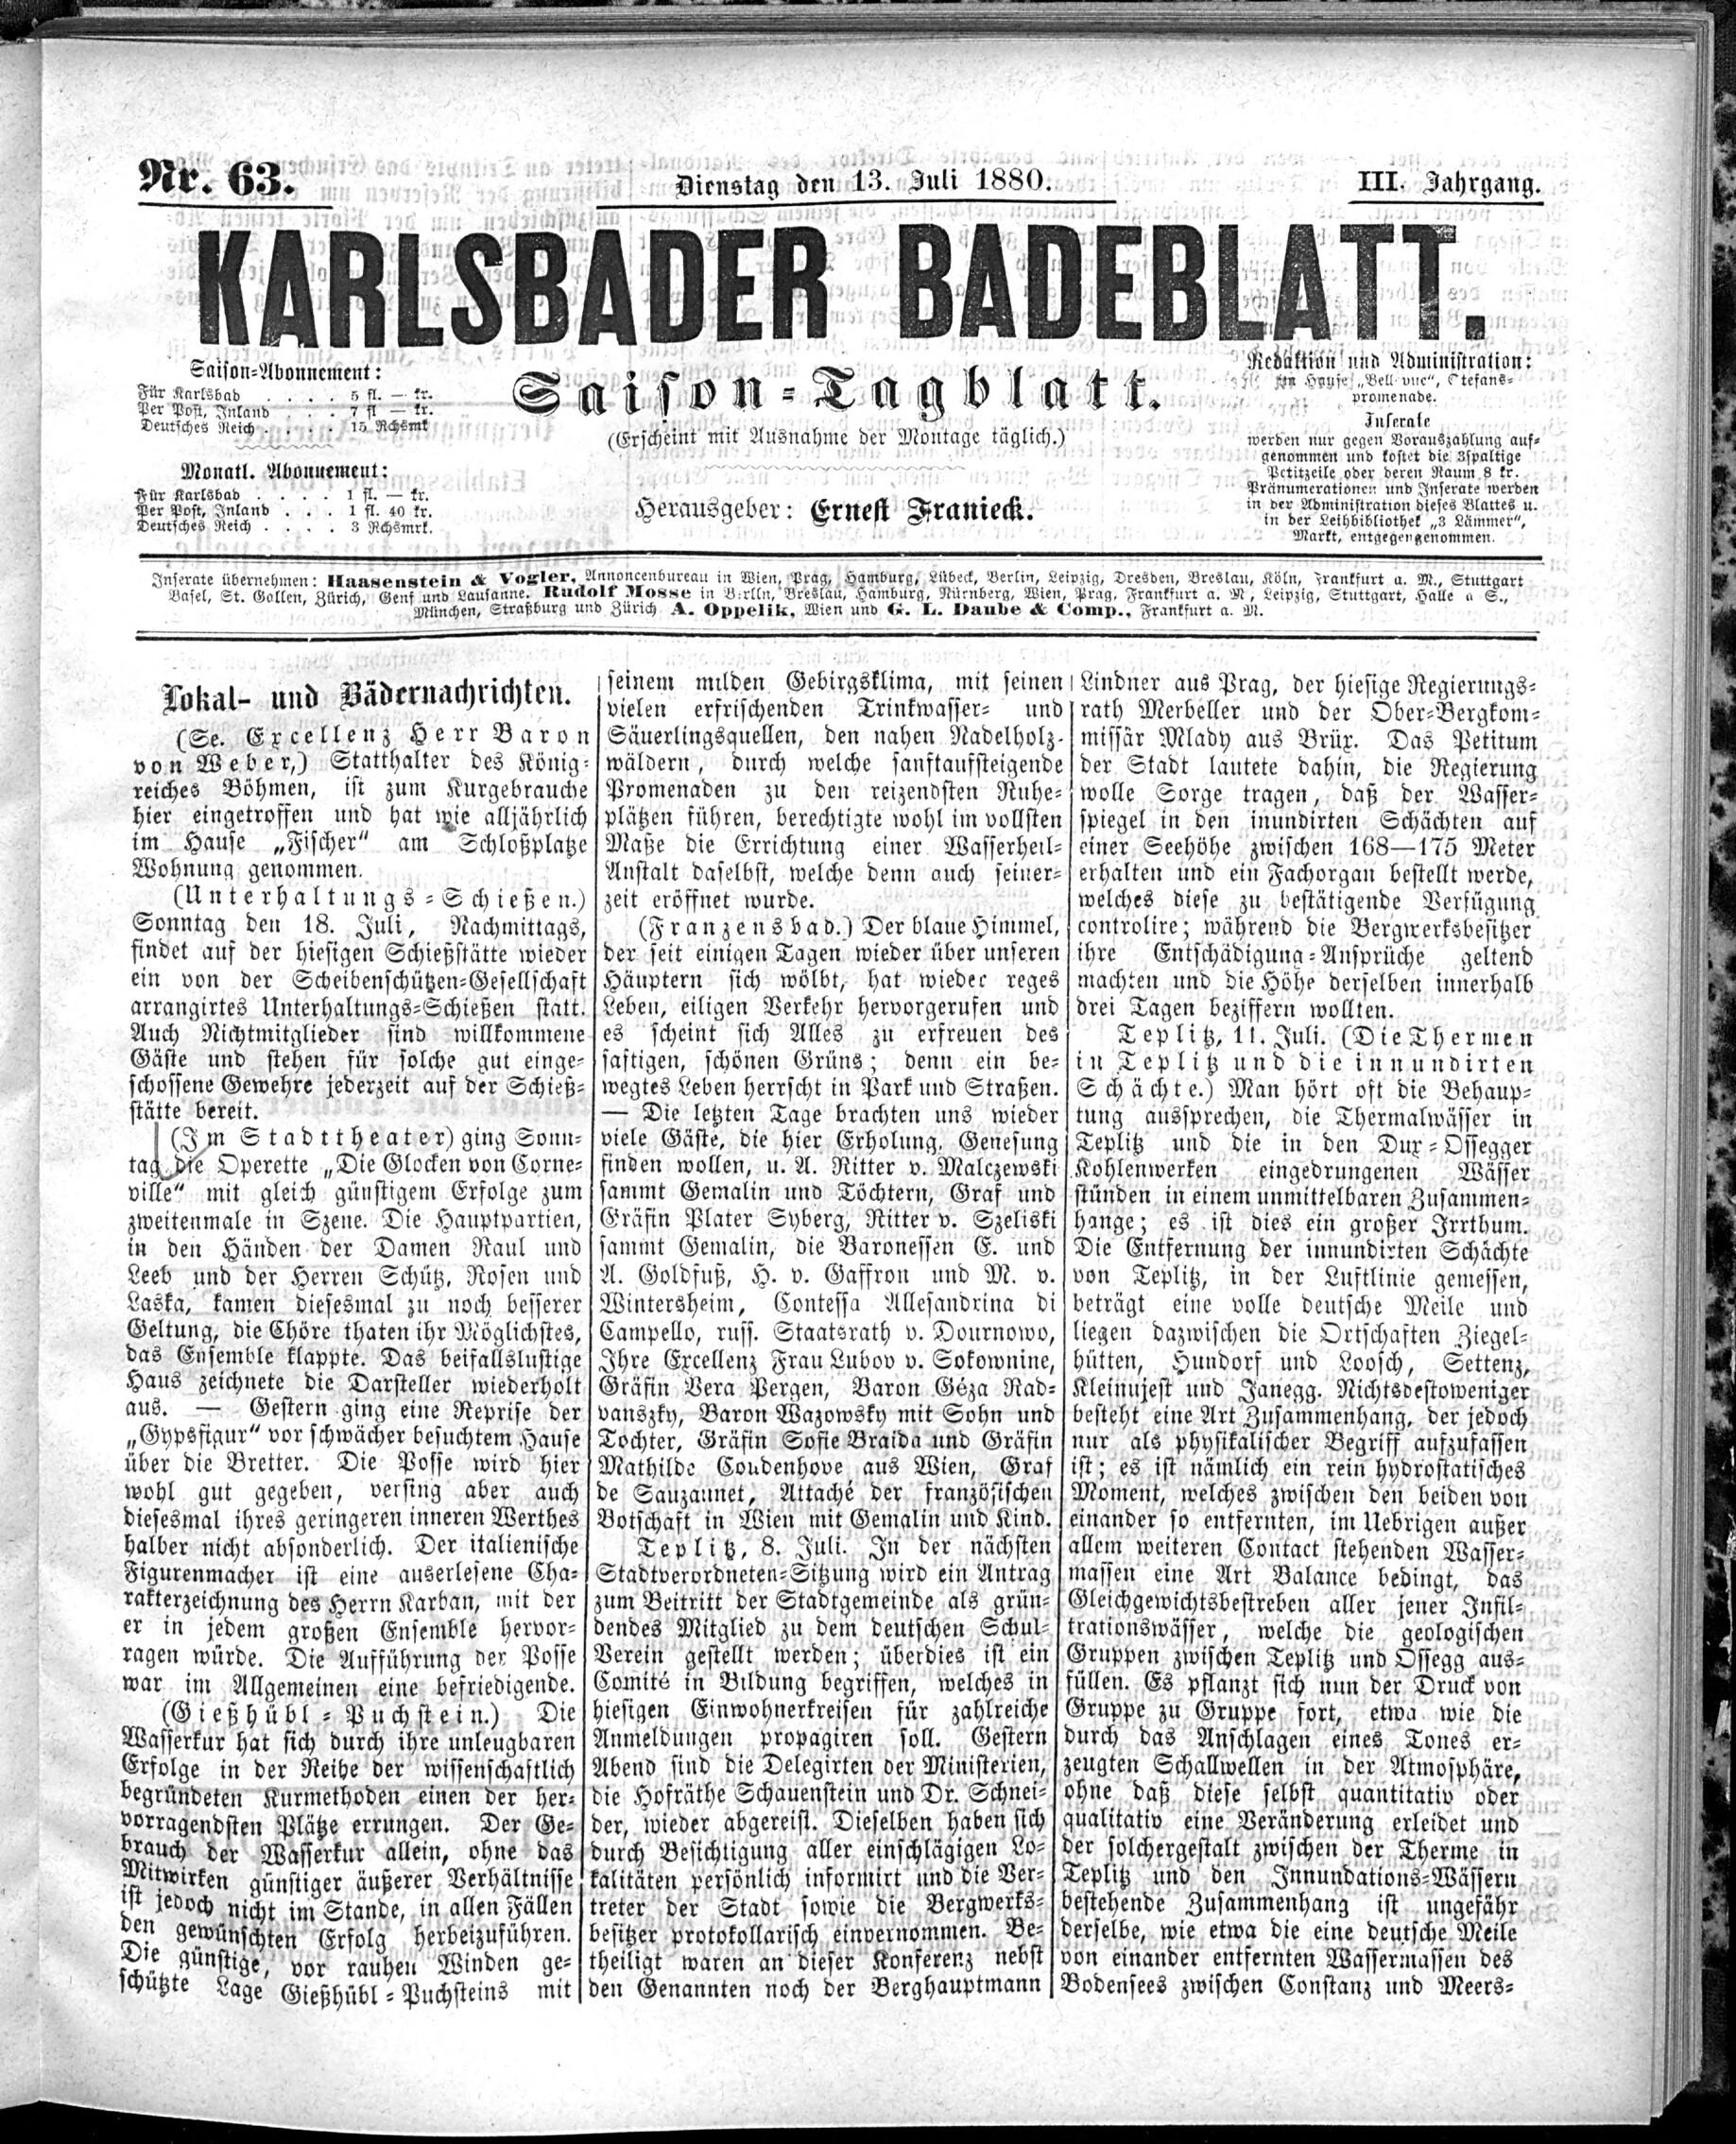 1. karlsbader-badeblatt-1880-07-13-n63_1285